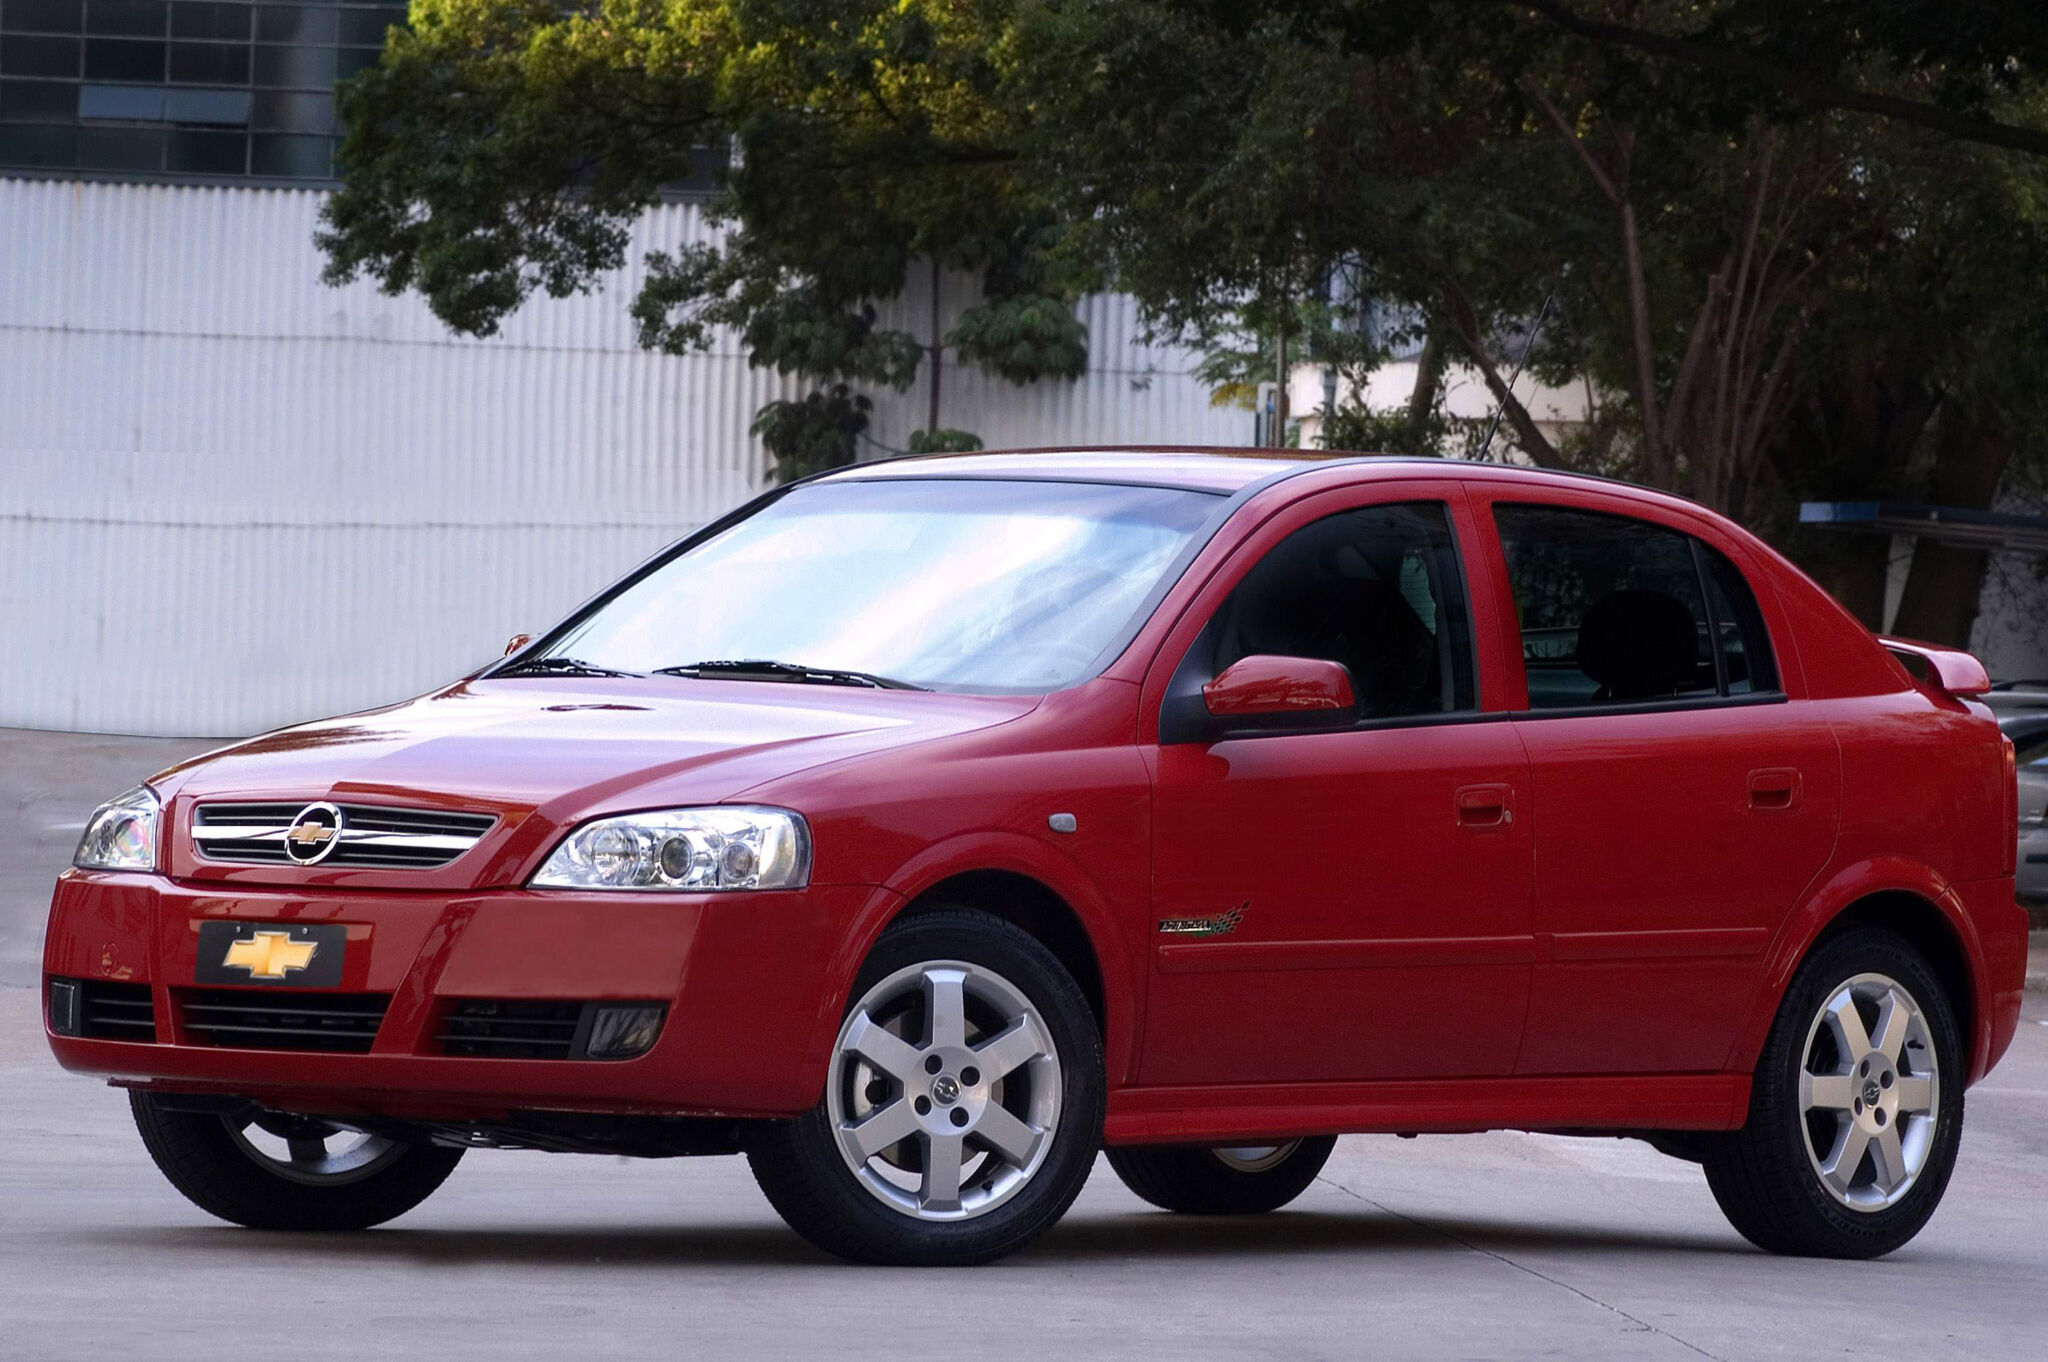 Chevrolet Astra Advantage vermelho de frente estacionado